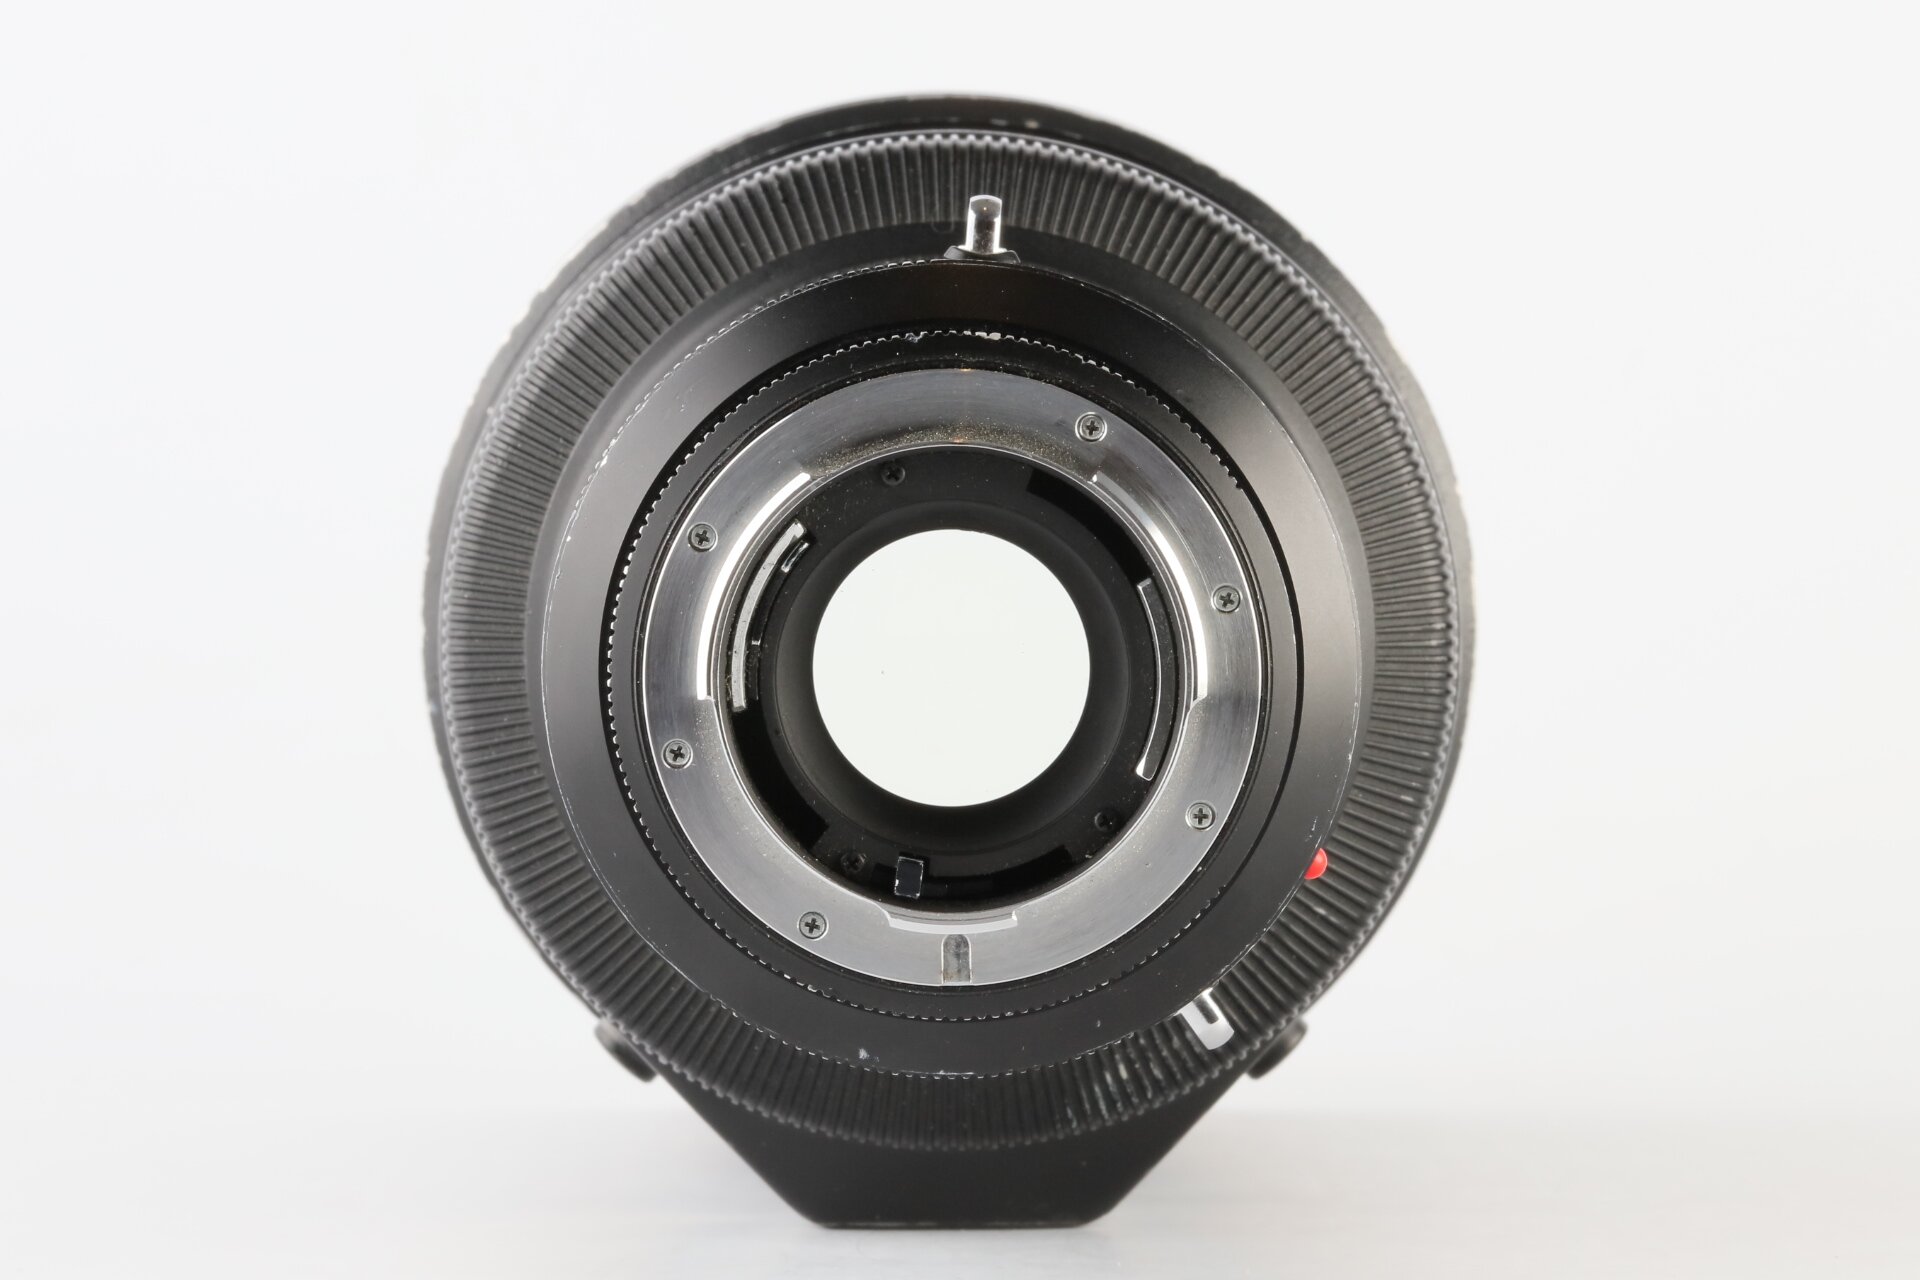 Leica R 2,8/280mm Apo-Telyt-R 3CAM